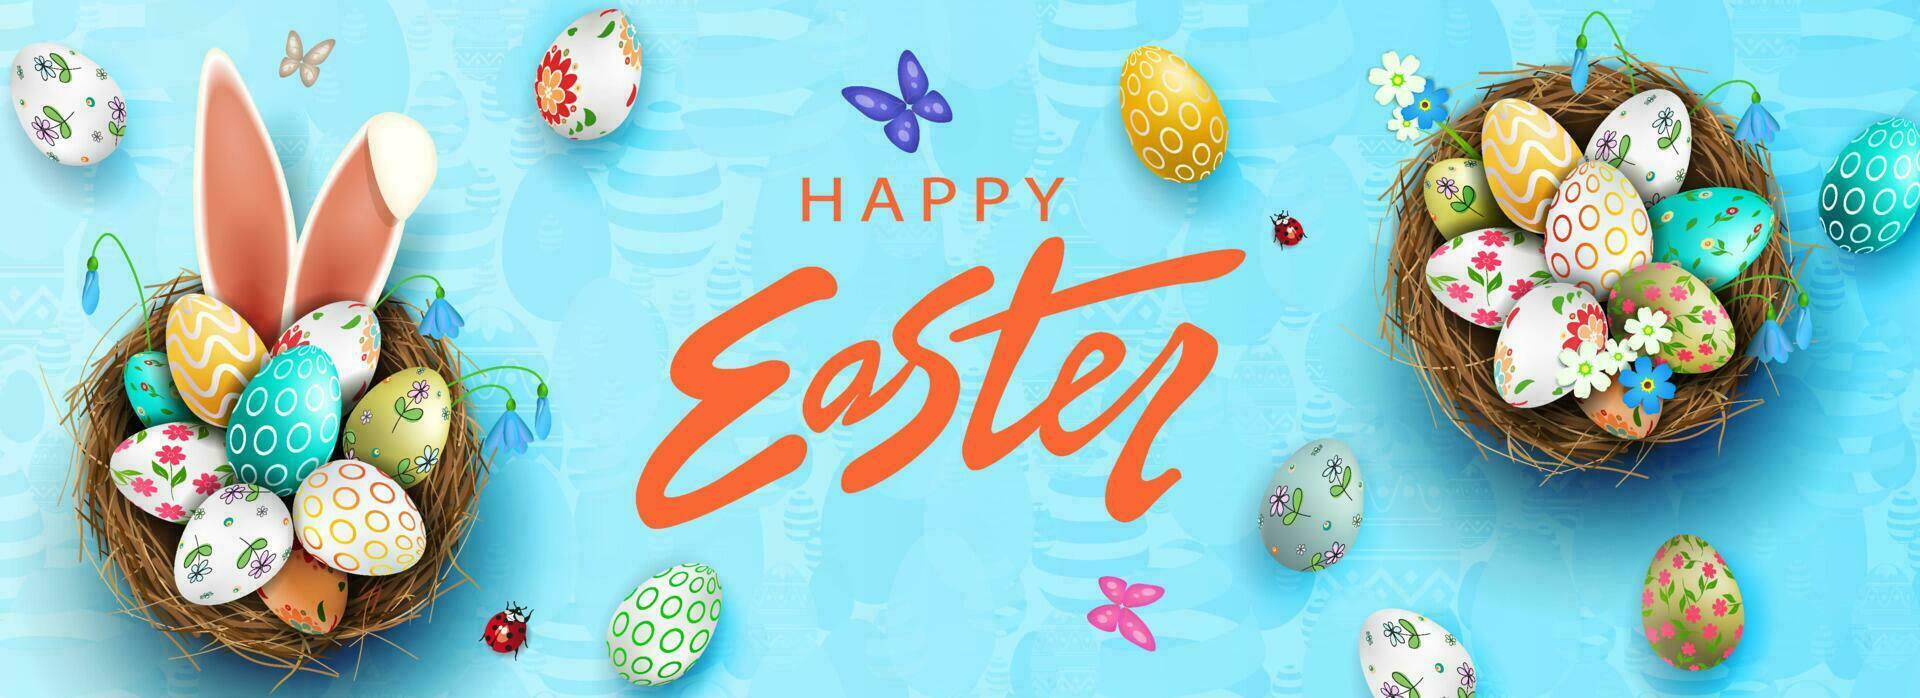 Pascua de Resurrección azul ilustración, huevos en un cesta con un hermosa patrón, conejito orejas, mariposas y escarabajos, azul campanillas de invierno vector